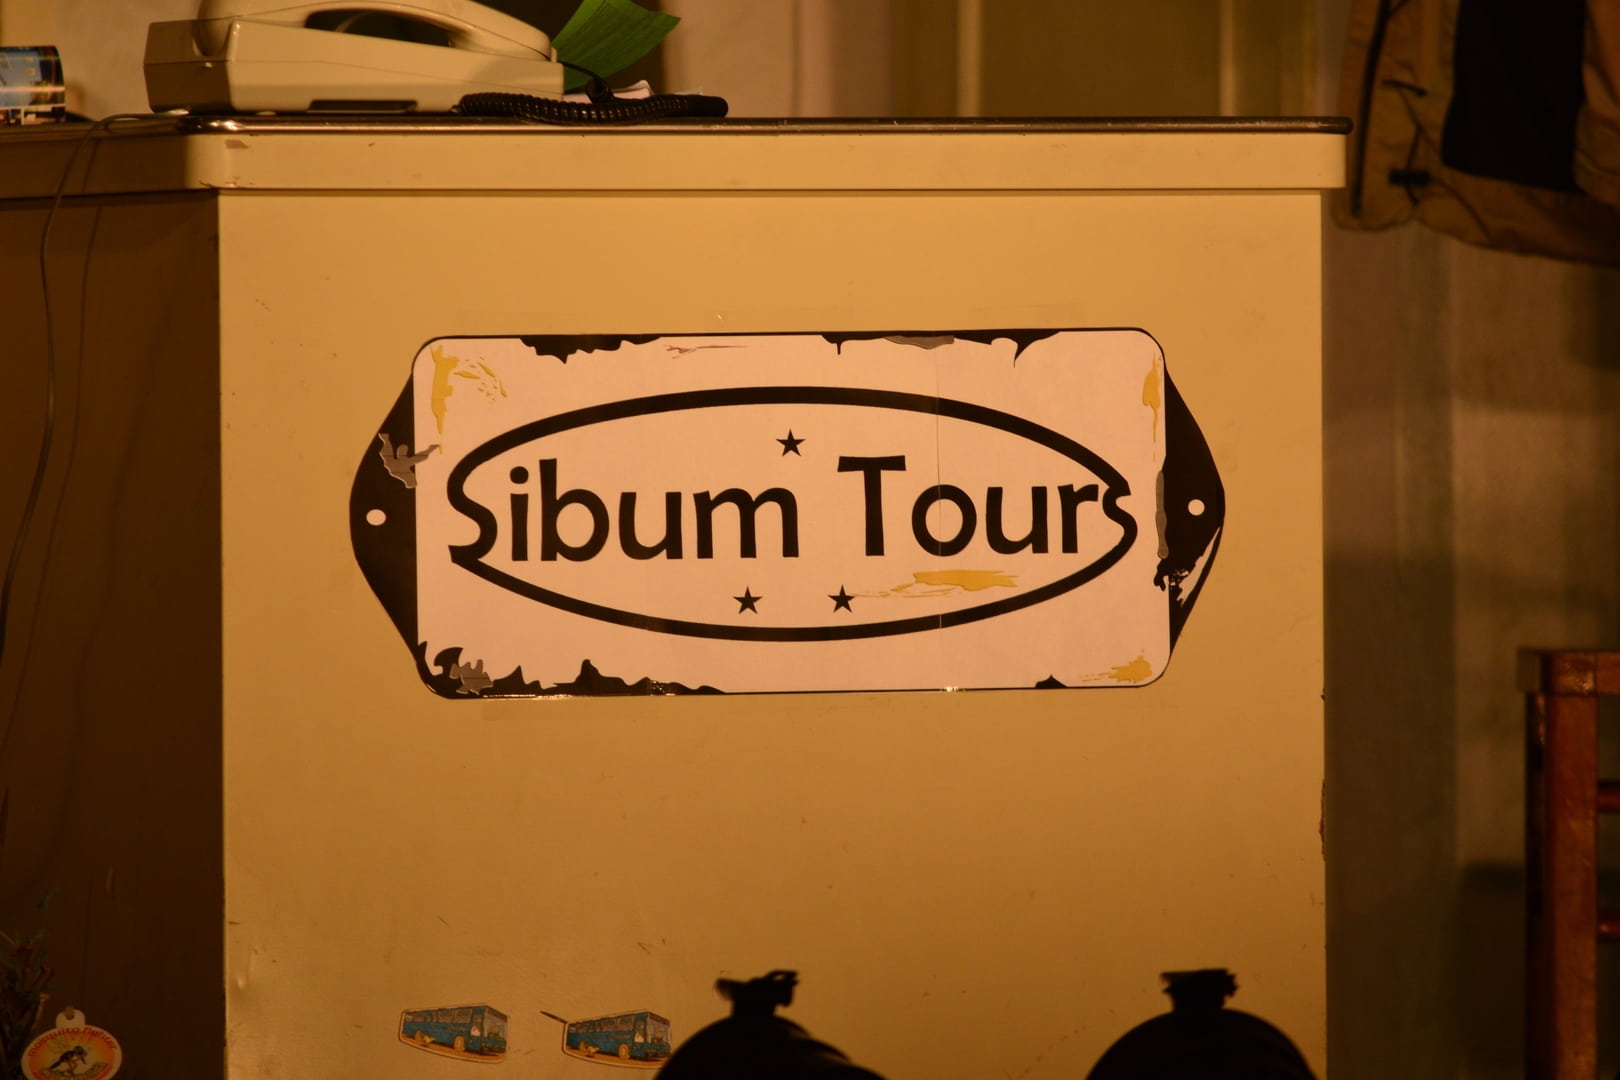 Herinneringen aan het oude Sibum Tours